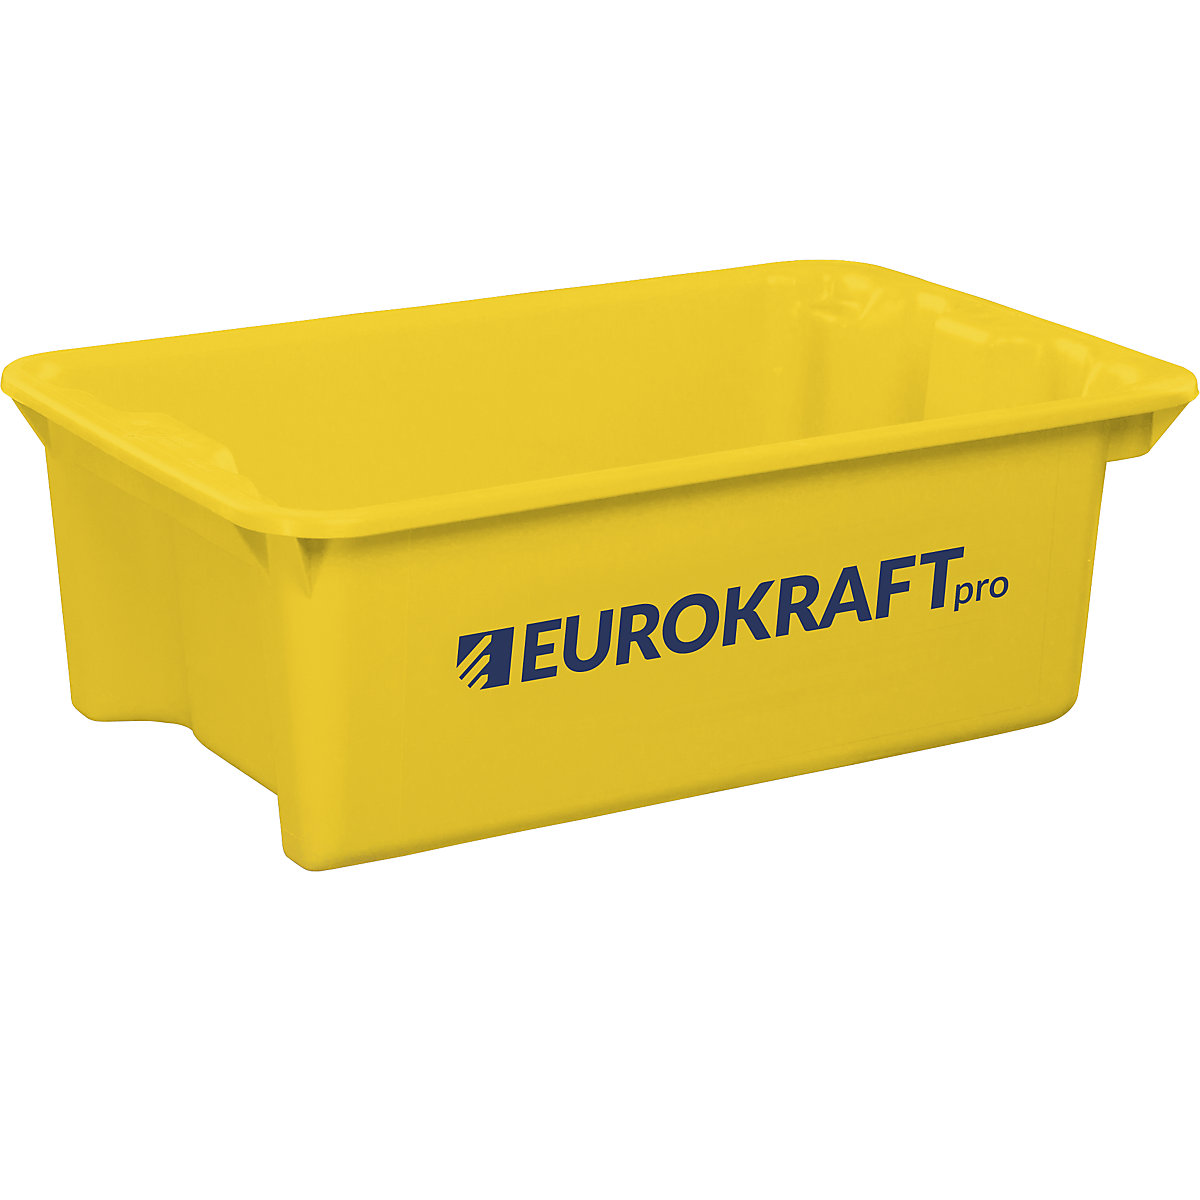 EUROKRAFTpro – Obrotowy pojemnik do ustawiania w stos z polipropylenu dopuszczonego do kontaktu z żywnością, poj. 34 l, opak. 3 szt., ścianki i dno zamknięte, żółte